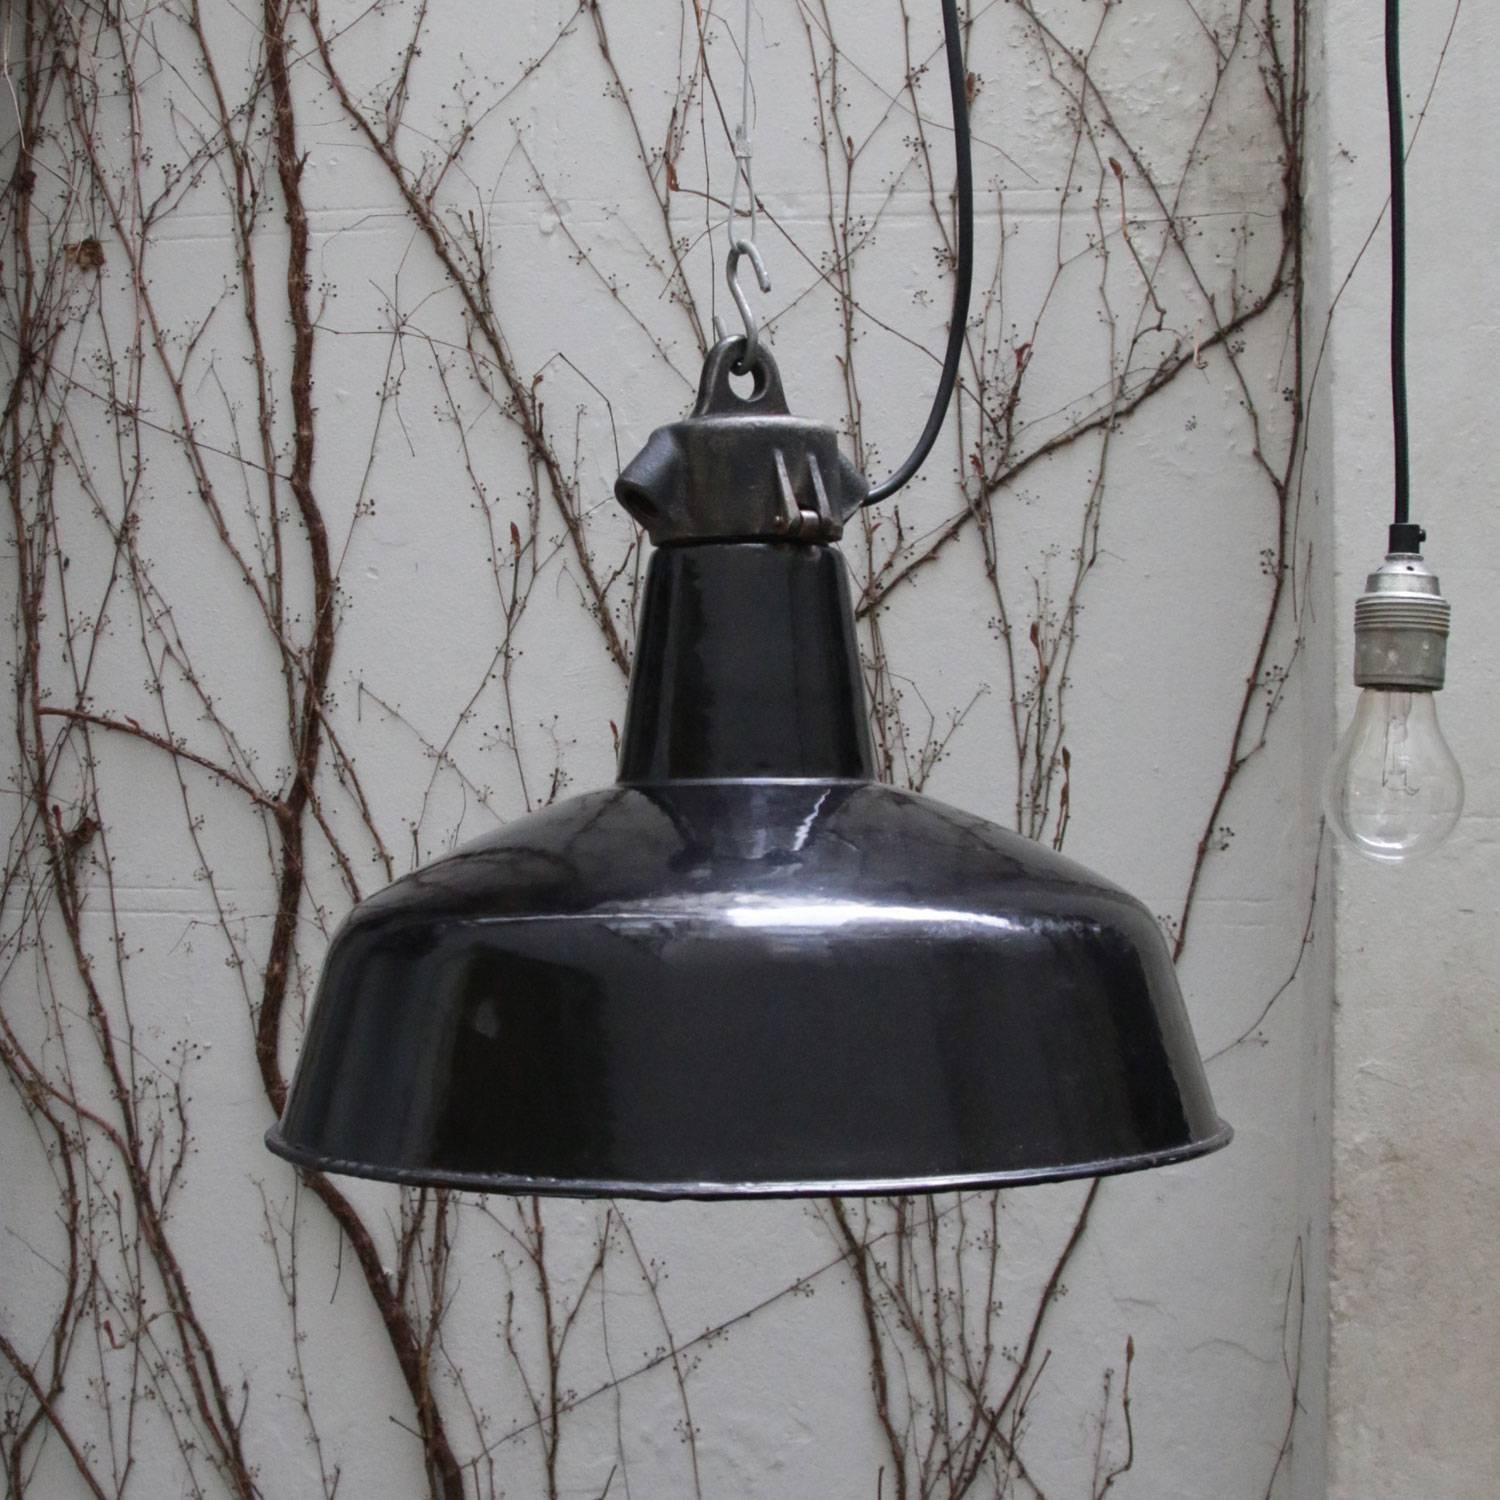 Cast Black Enamel Vintage Industrial Bauhaus Pendant Lamps, 1930s (33x)